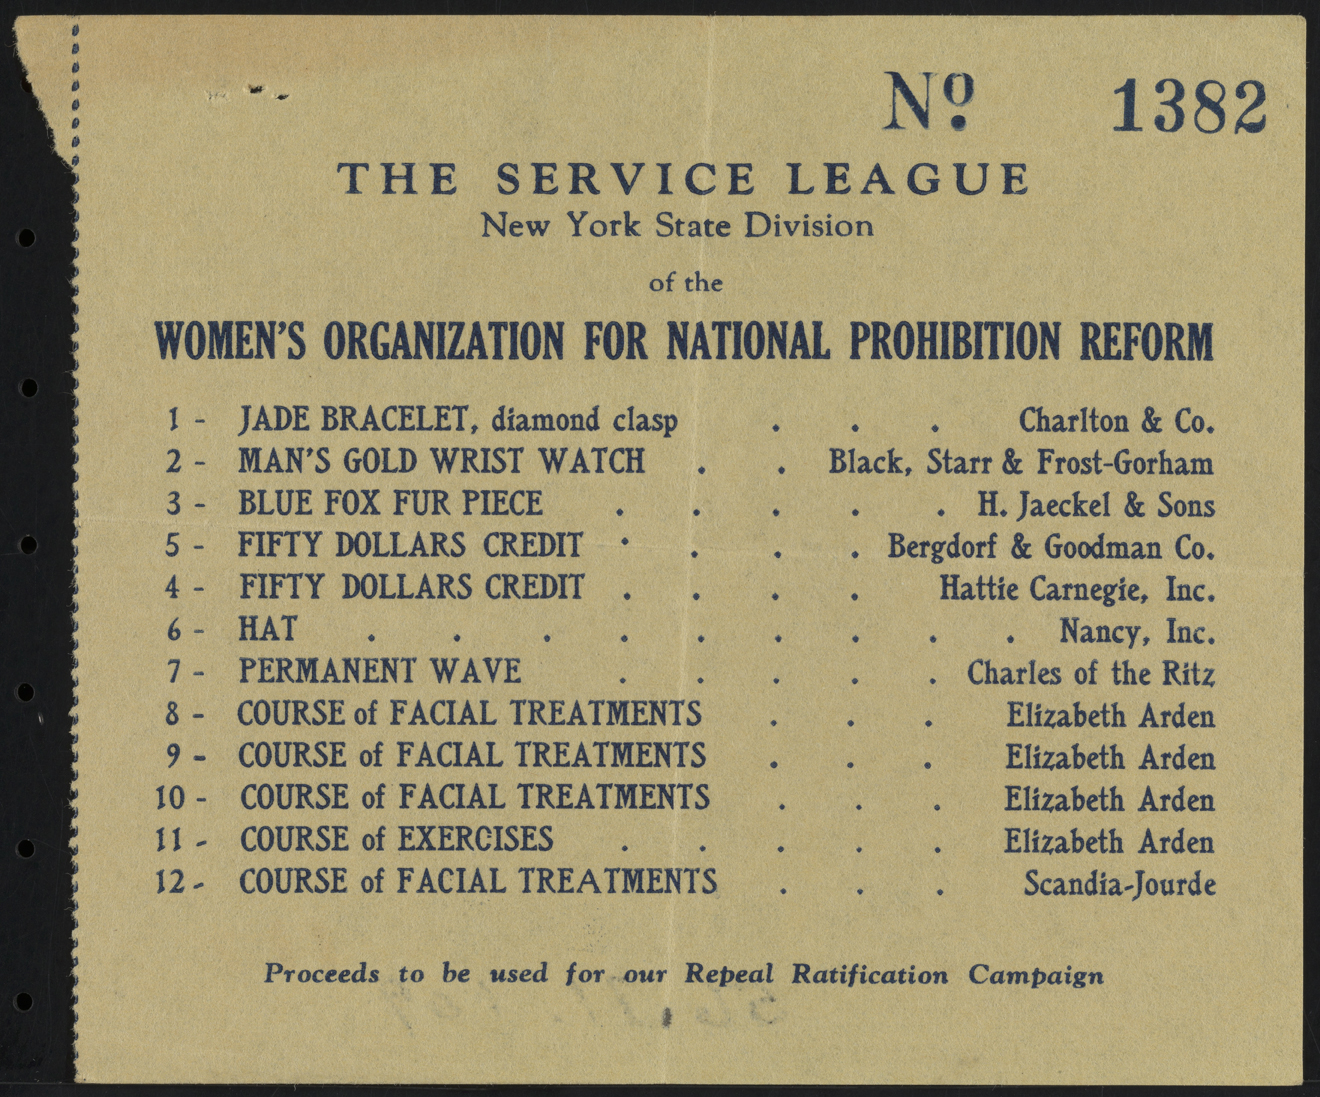 Ticket Stub, The Service League, División del Estado de Nueva York de la Organización de Mujeres para la Reforma Nacional de Prohibición